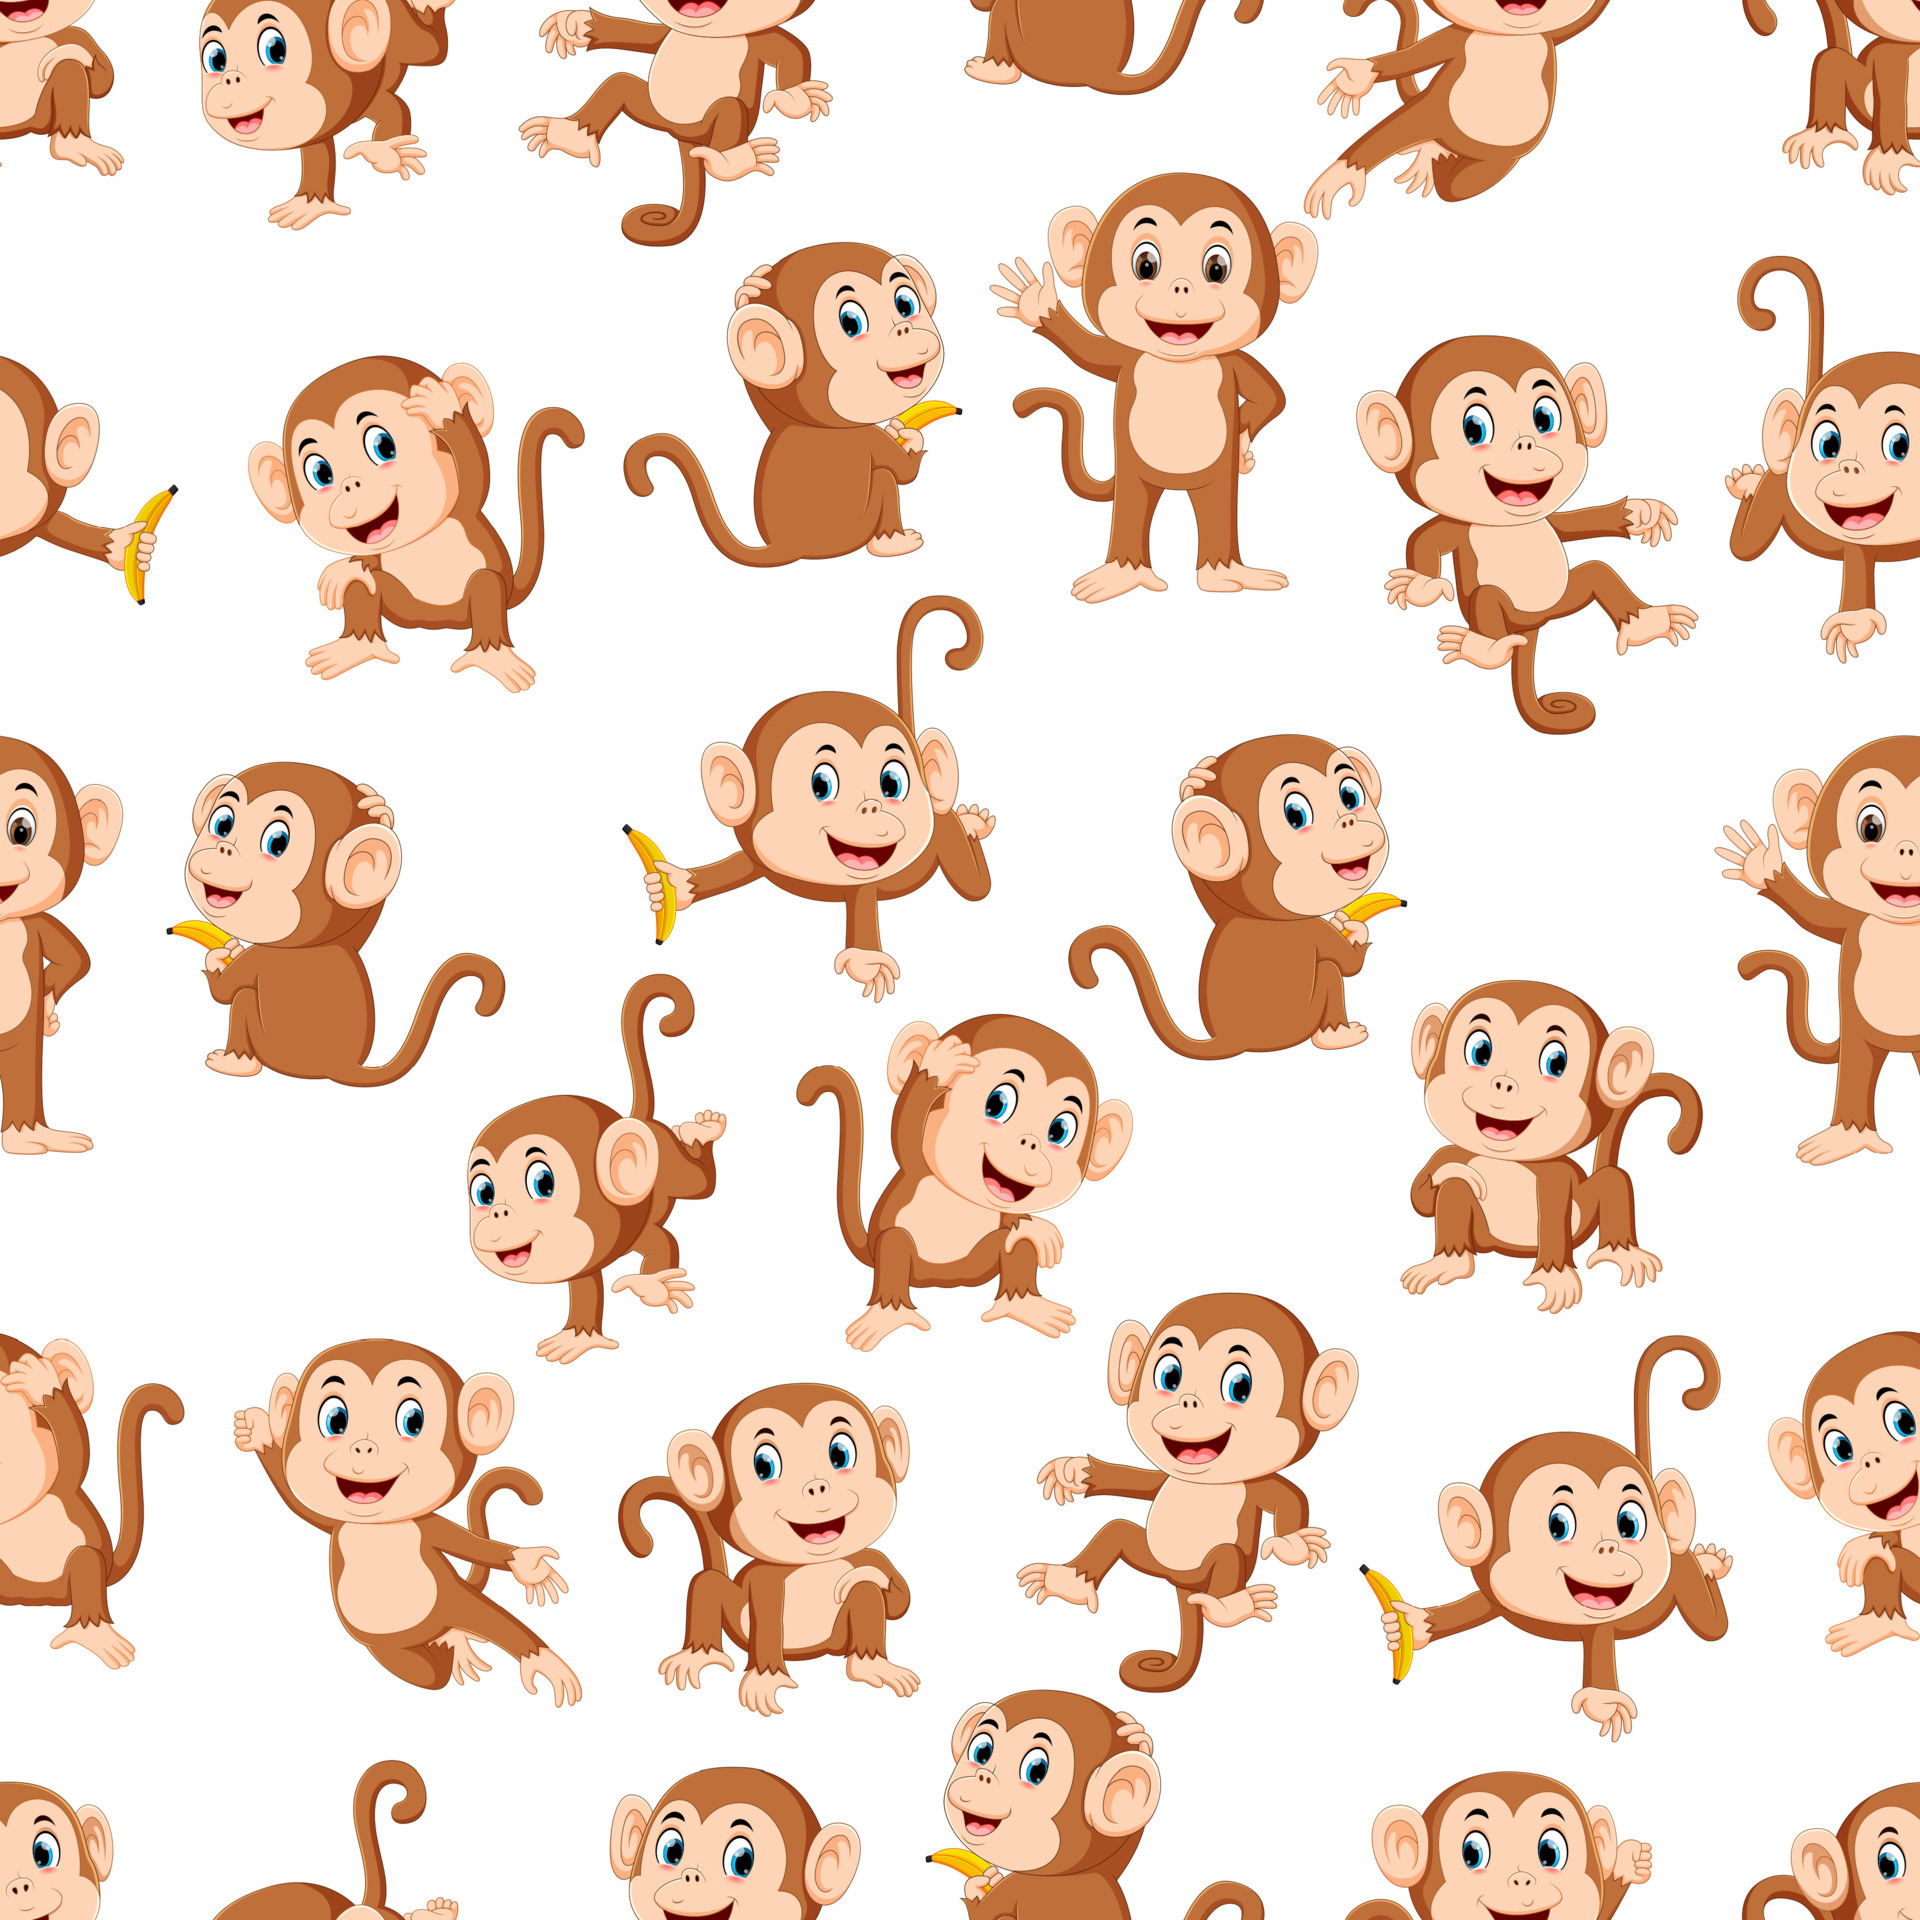 Macacos fofos posando juntos